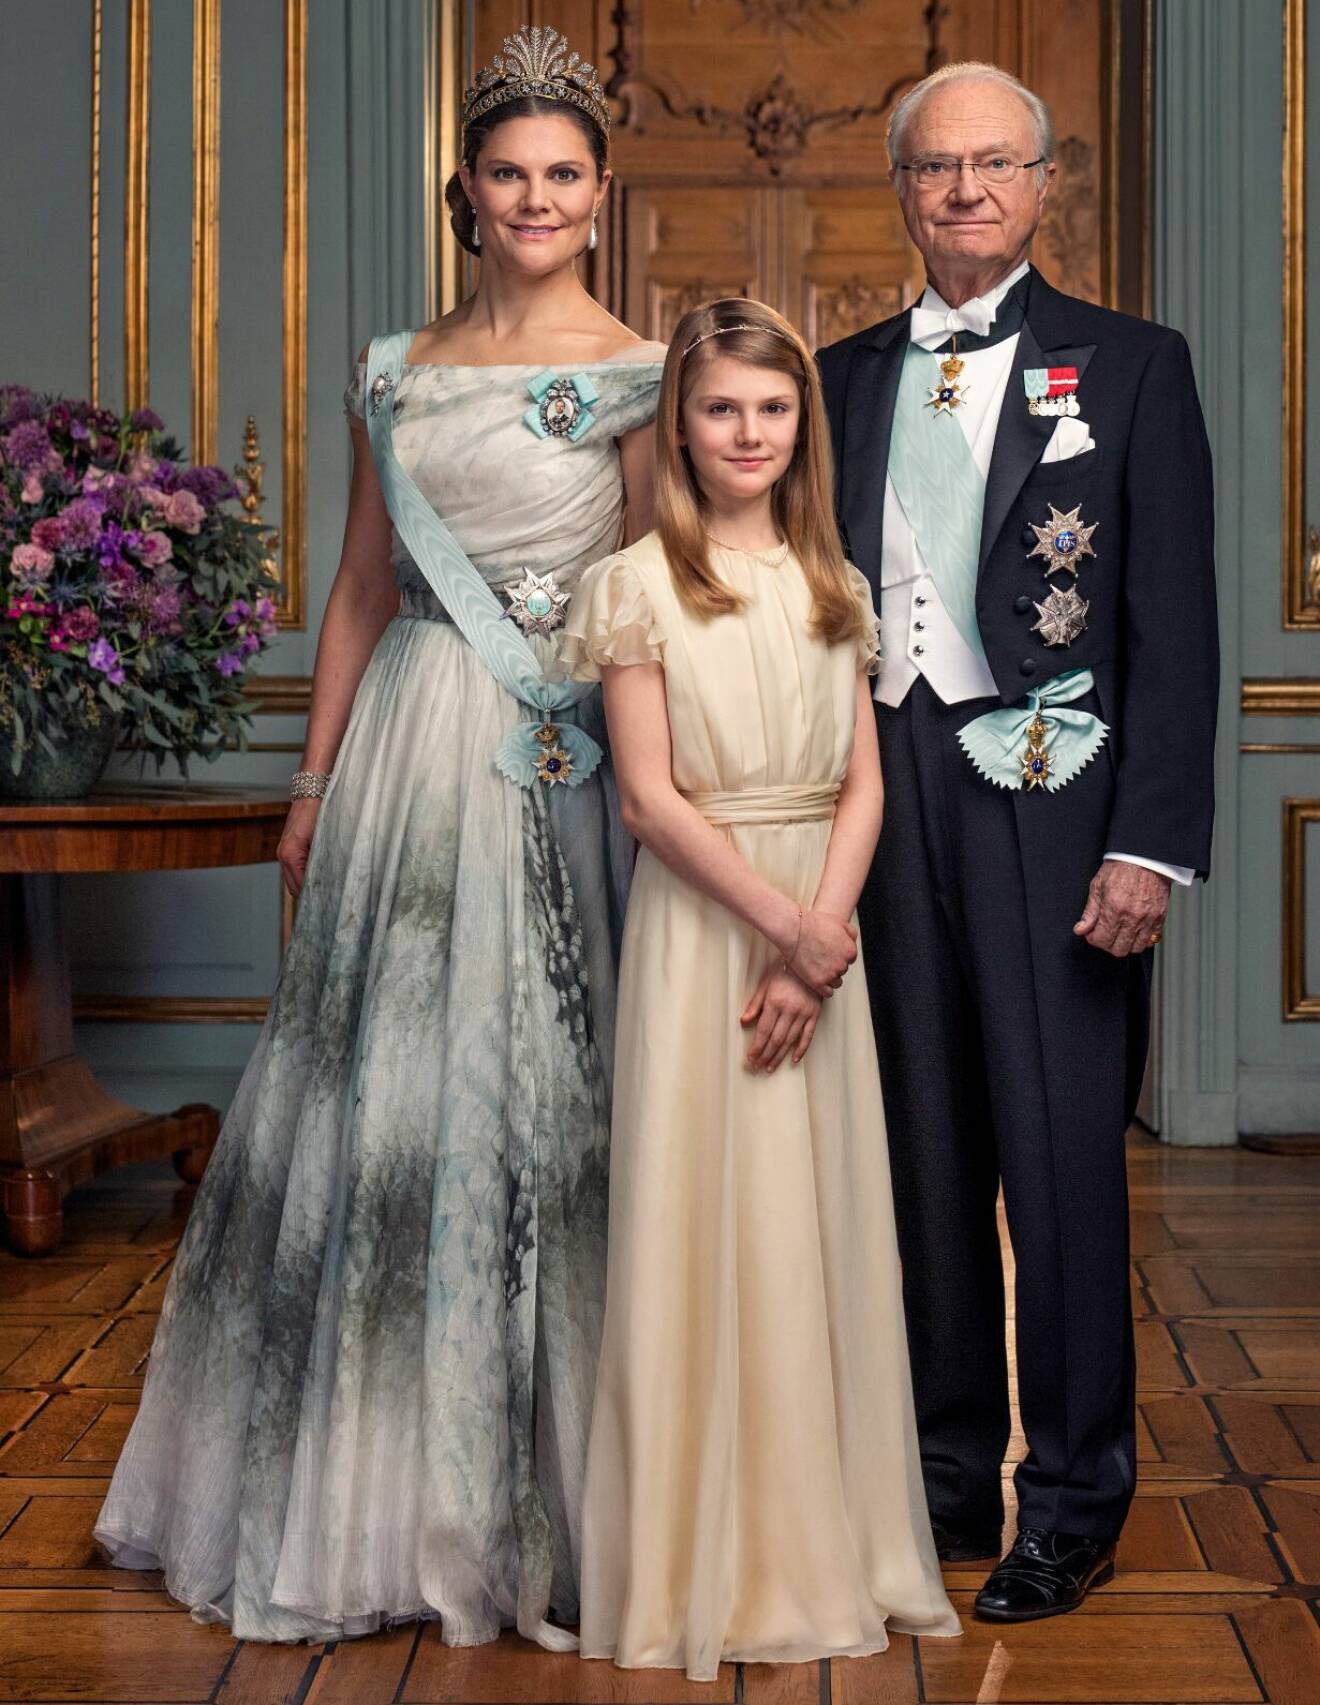 Prinsessan Estelle Kronprinsessan Victoria Kungen Hovets nya officiella bild